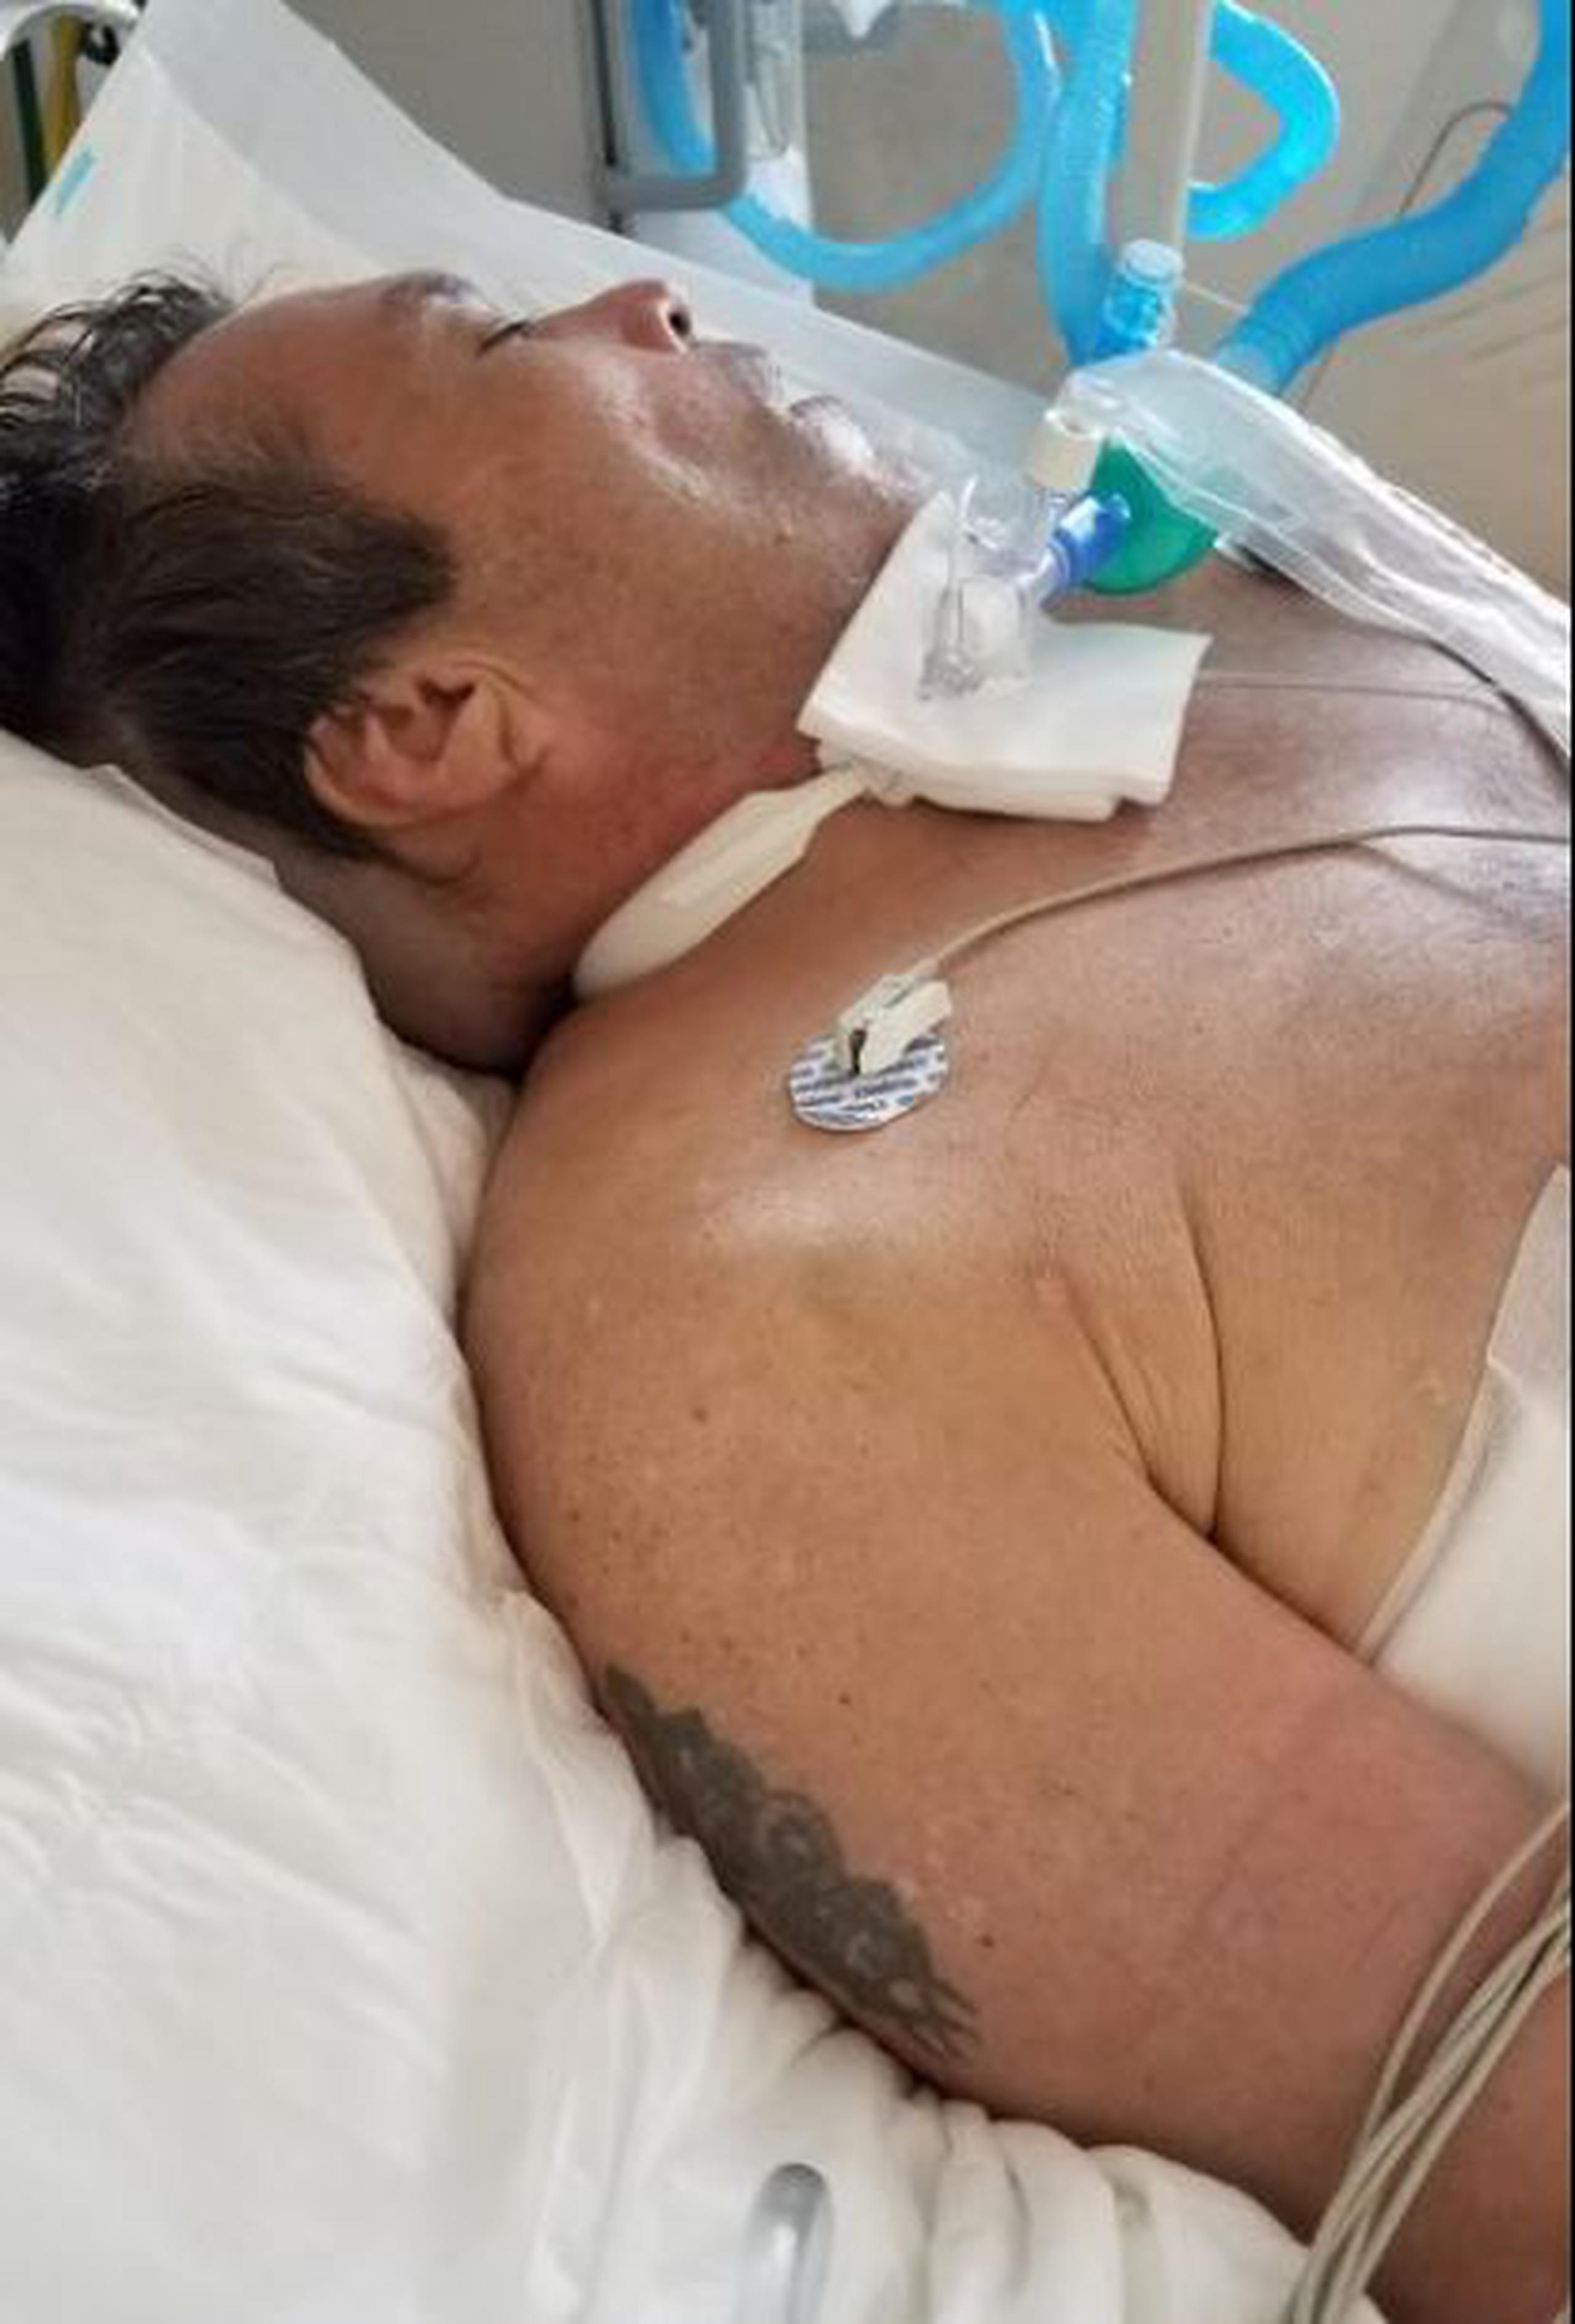 Este hombre, que exhibe un tatuaje en su brazo derecho, fue arrollado el 24 de noviembre frente al Natatorio en San Juan. Actualmente está hospitalizado en el Centro Médico y urge contactar un familiar. (Suministrada)